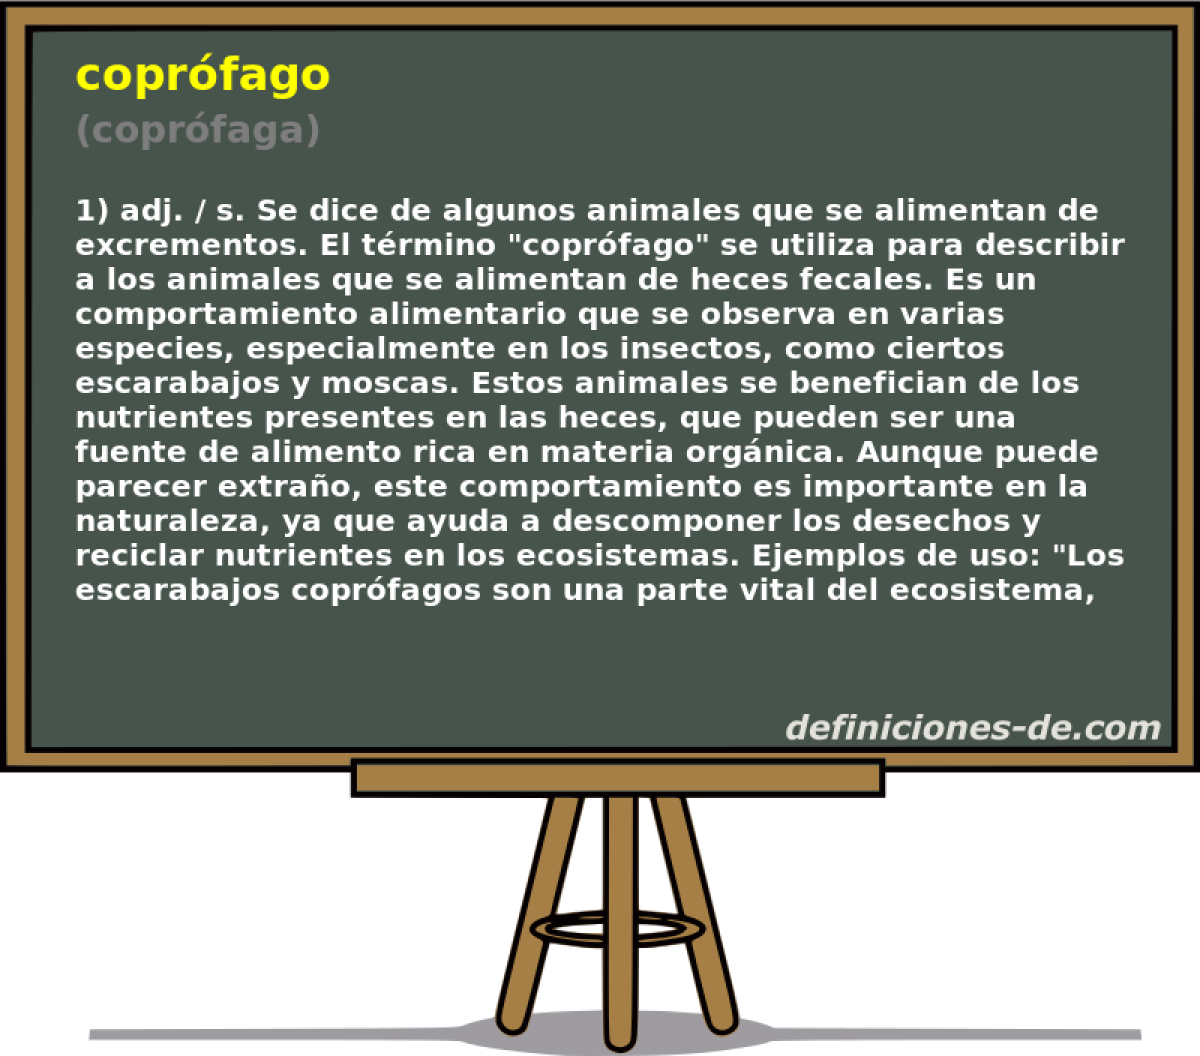 coprfago (coprfaga)